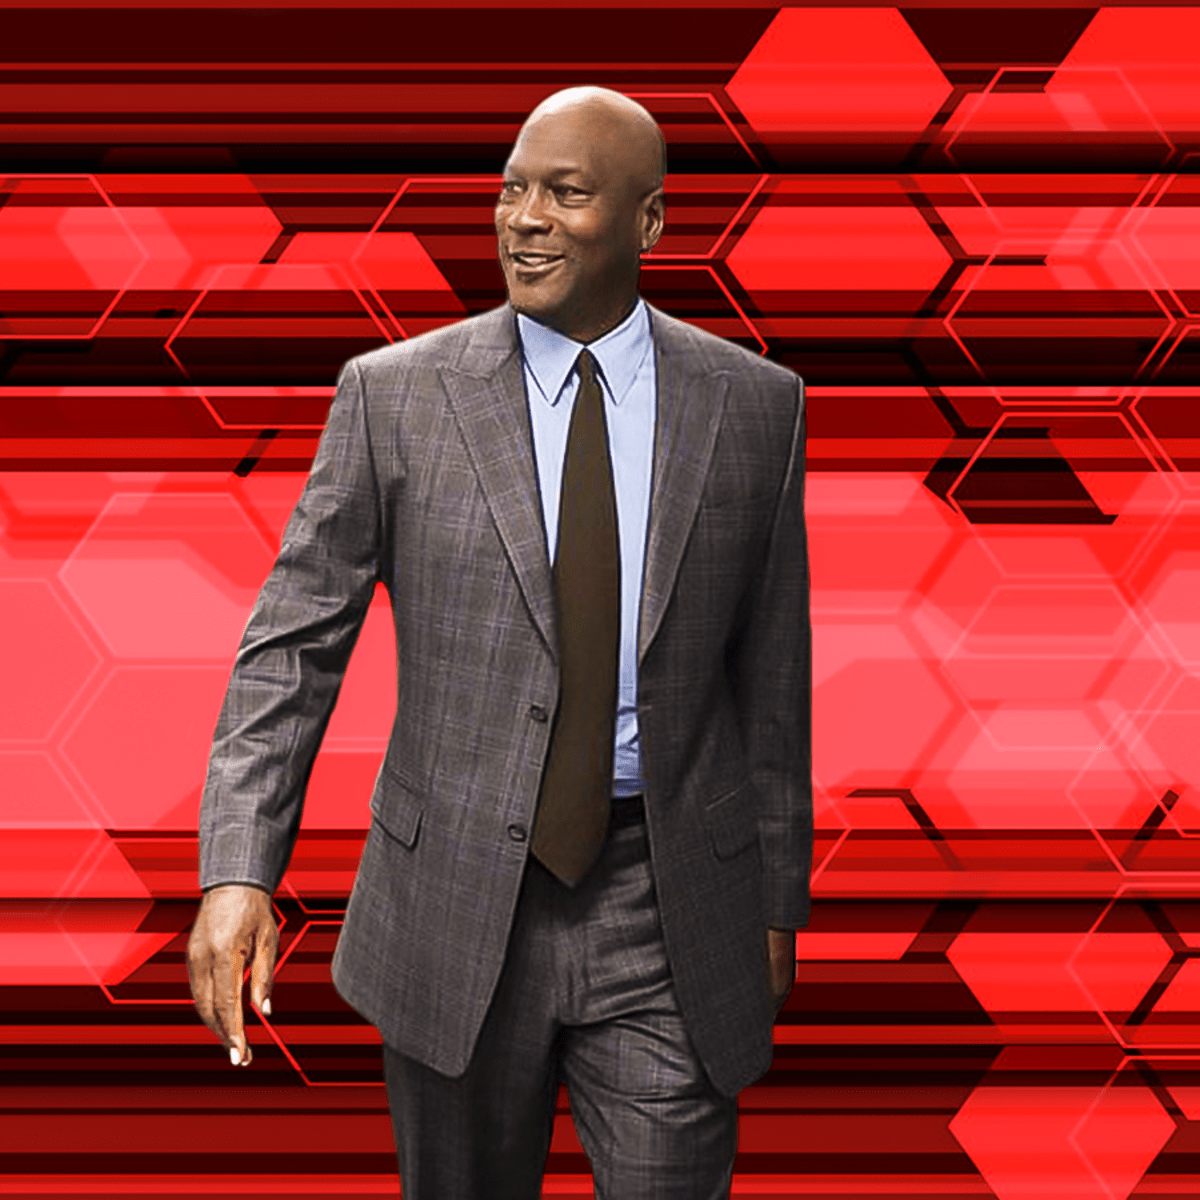 Michael Jordan Turned Down $100 Million for 2 Hour Event